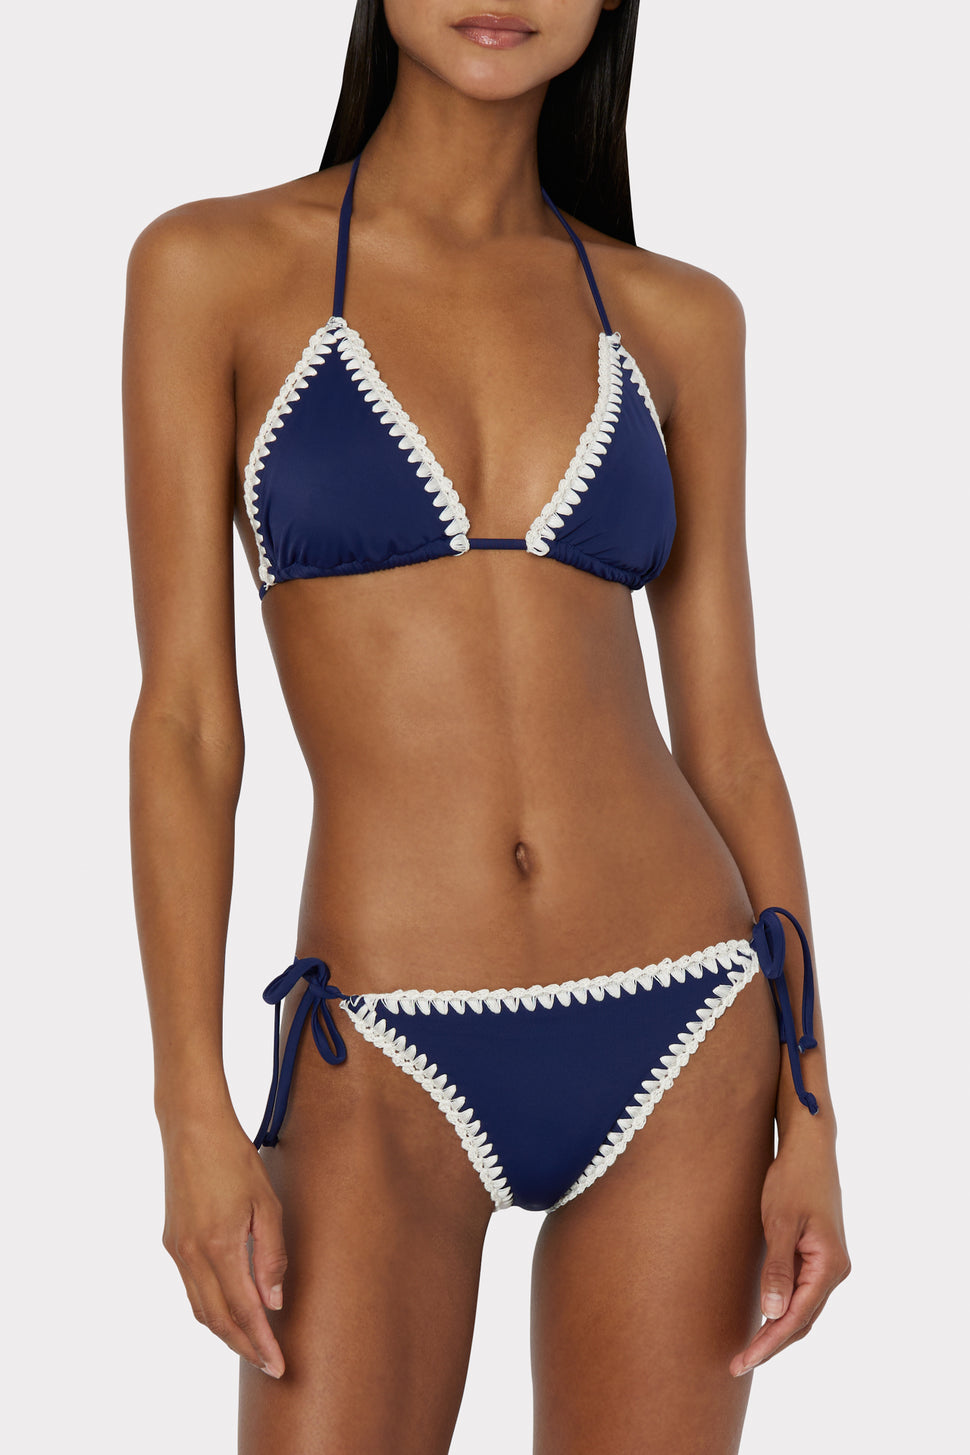 Marina bikini bottom underwear - Baby blue